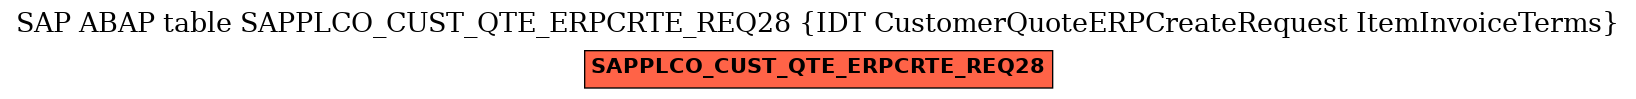 E-R Diagram for table SAPPLCO_CUST_QTE_ERPCRTE_REQ28 (IDT CustomerQuoteERPCreateRequest ItemInvoiceTerms)